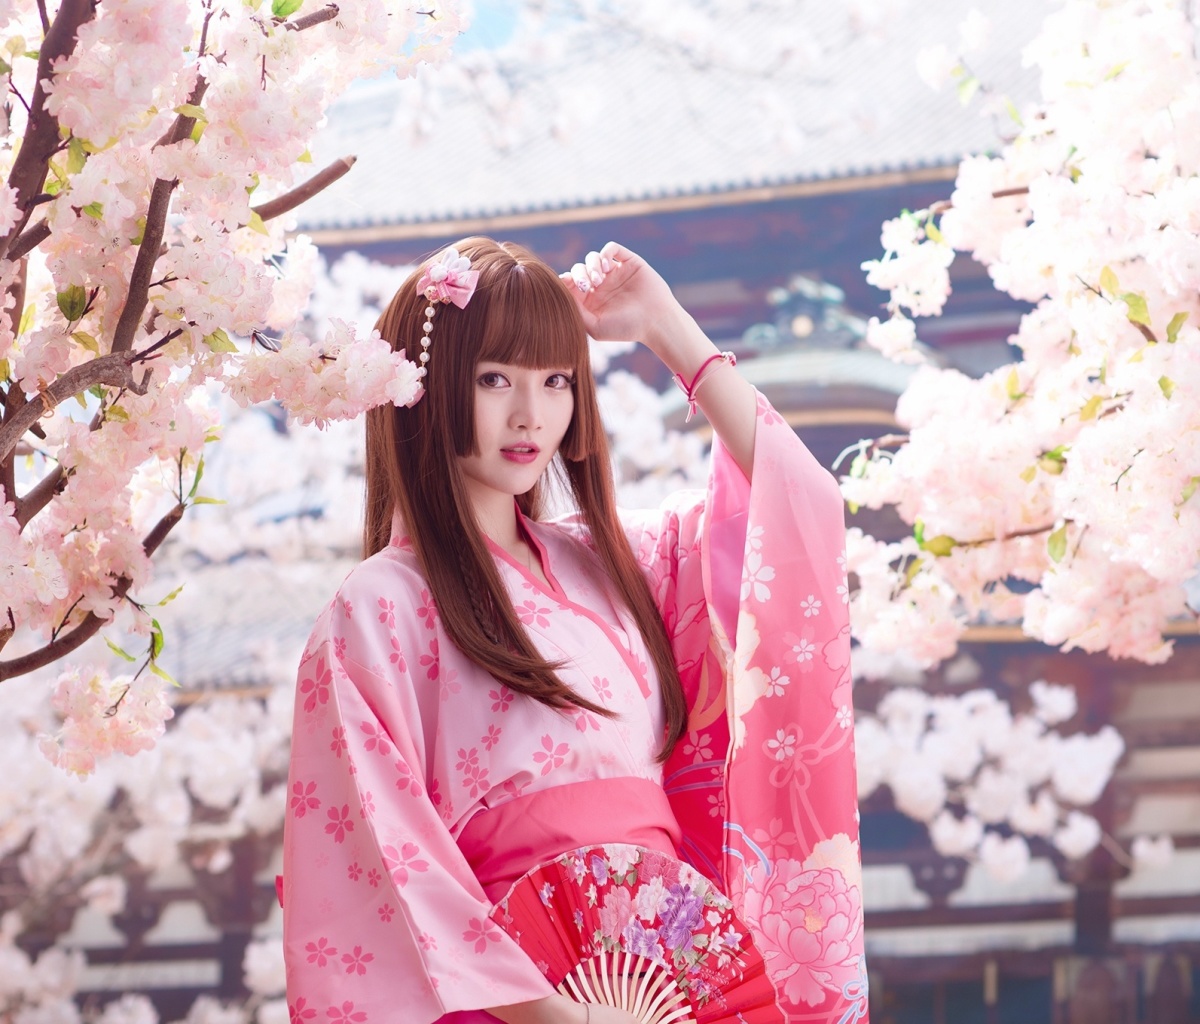 Japanese Girl in Kimono wallpaper 1200x1024